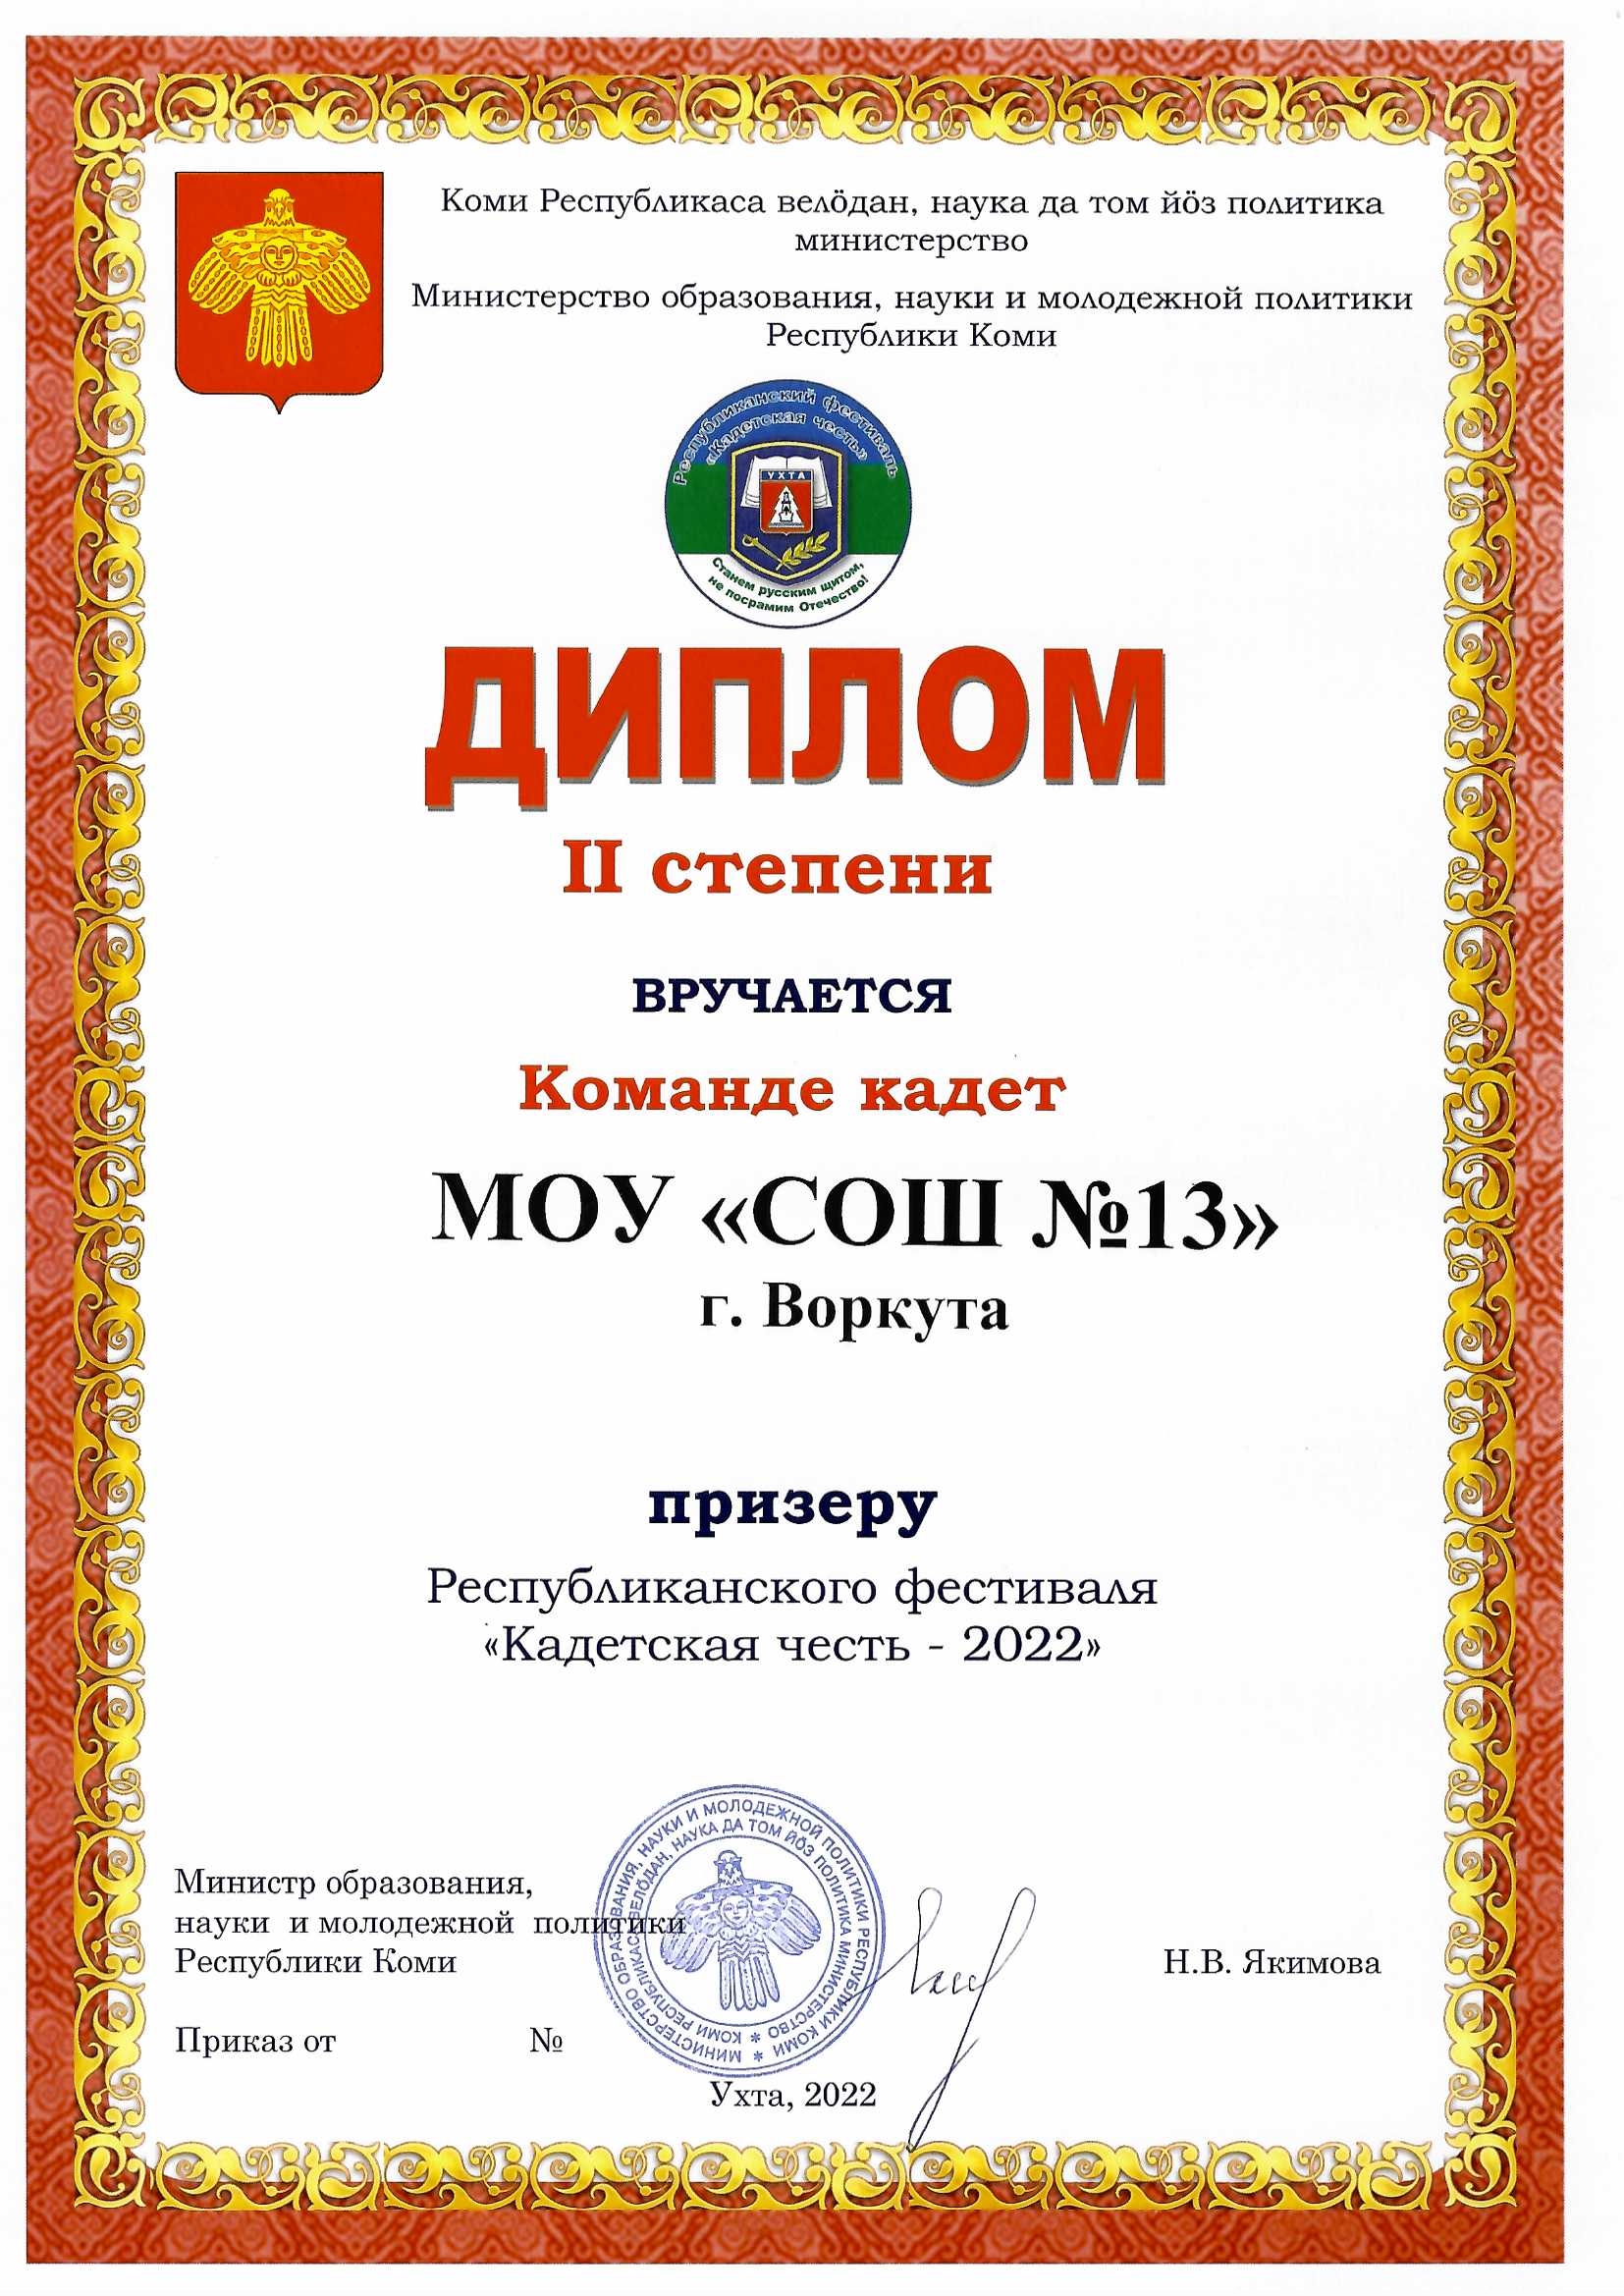 Диплом II степени призеру Республиканского фестиваля "Кадетская честь"